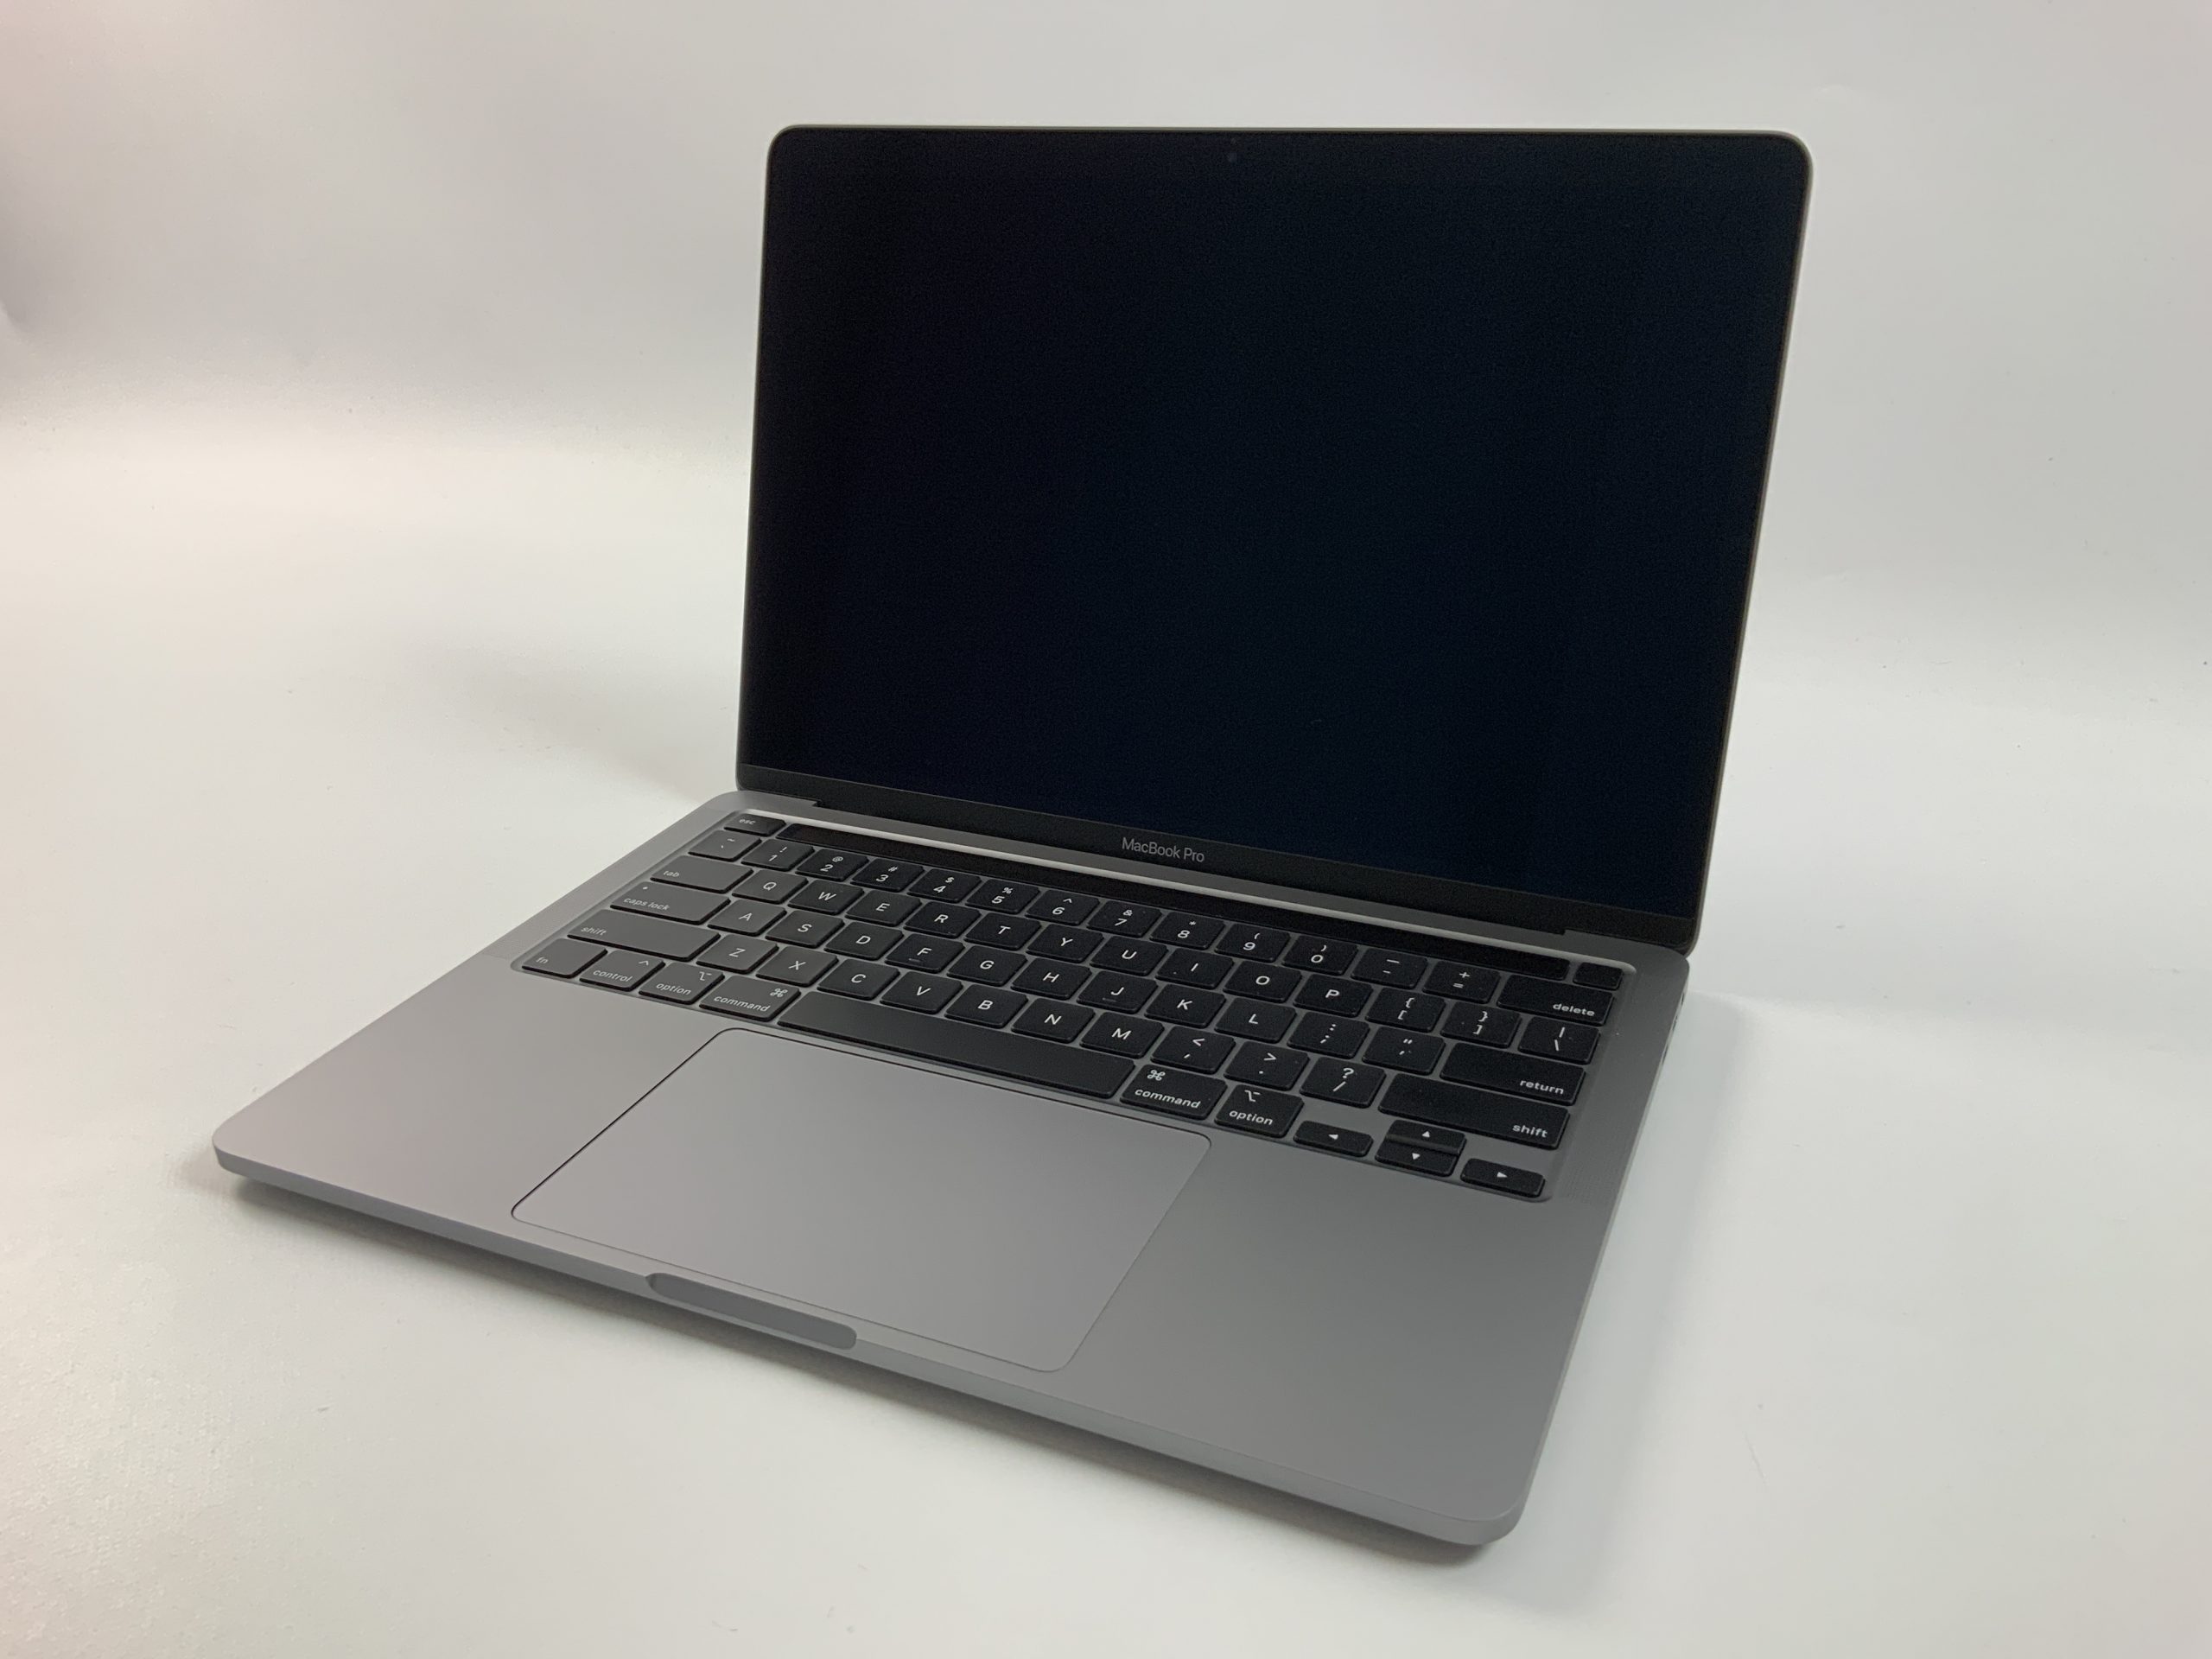 MacBook Pro 13" 4TBT Mid 2020 (Intel Quad-Core i5 2.0 GHz 16 GB RAM 512 GB SSD), Space Gray, Intel Quad-Core i5 2.0 GHz, 16 GB RAM, 512 GB SSD, immagine 1